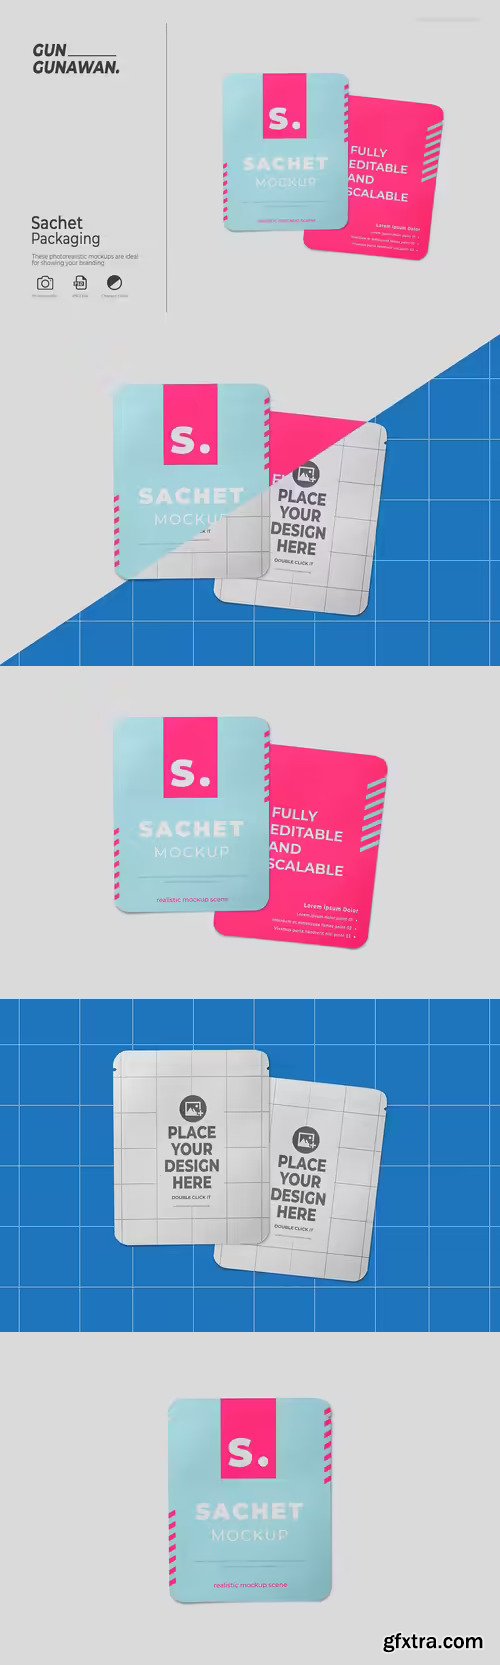 Sachet Packaging Mockup